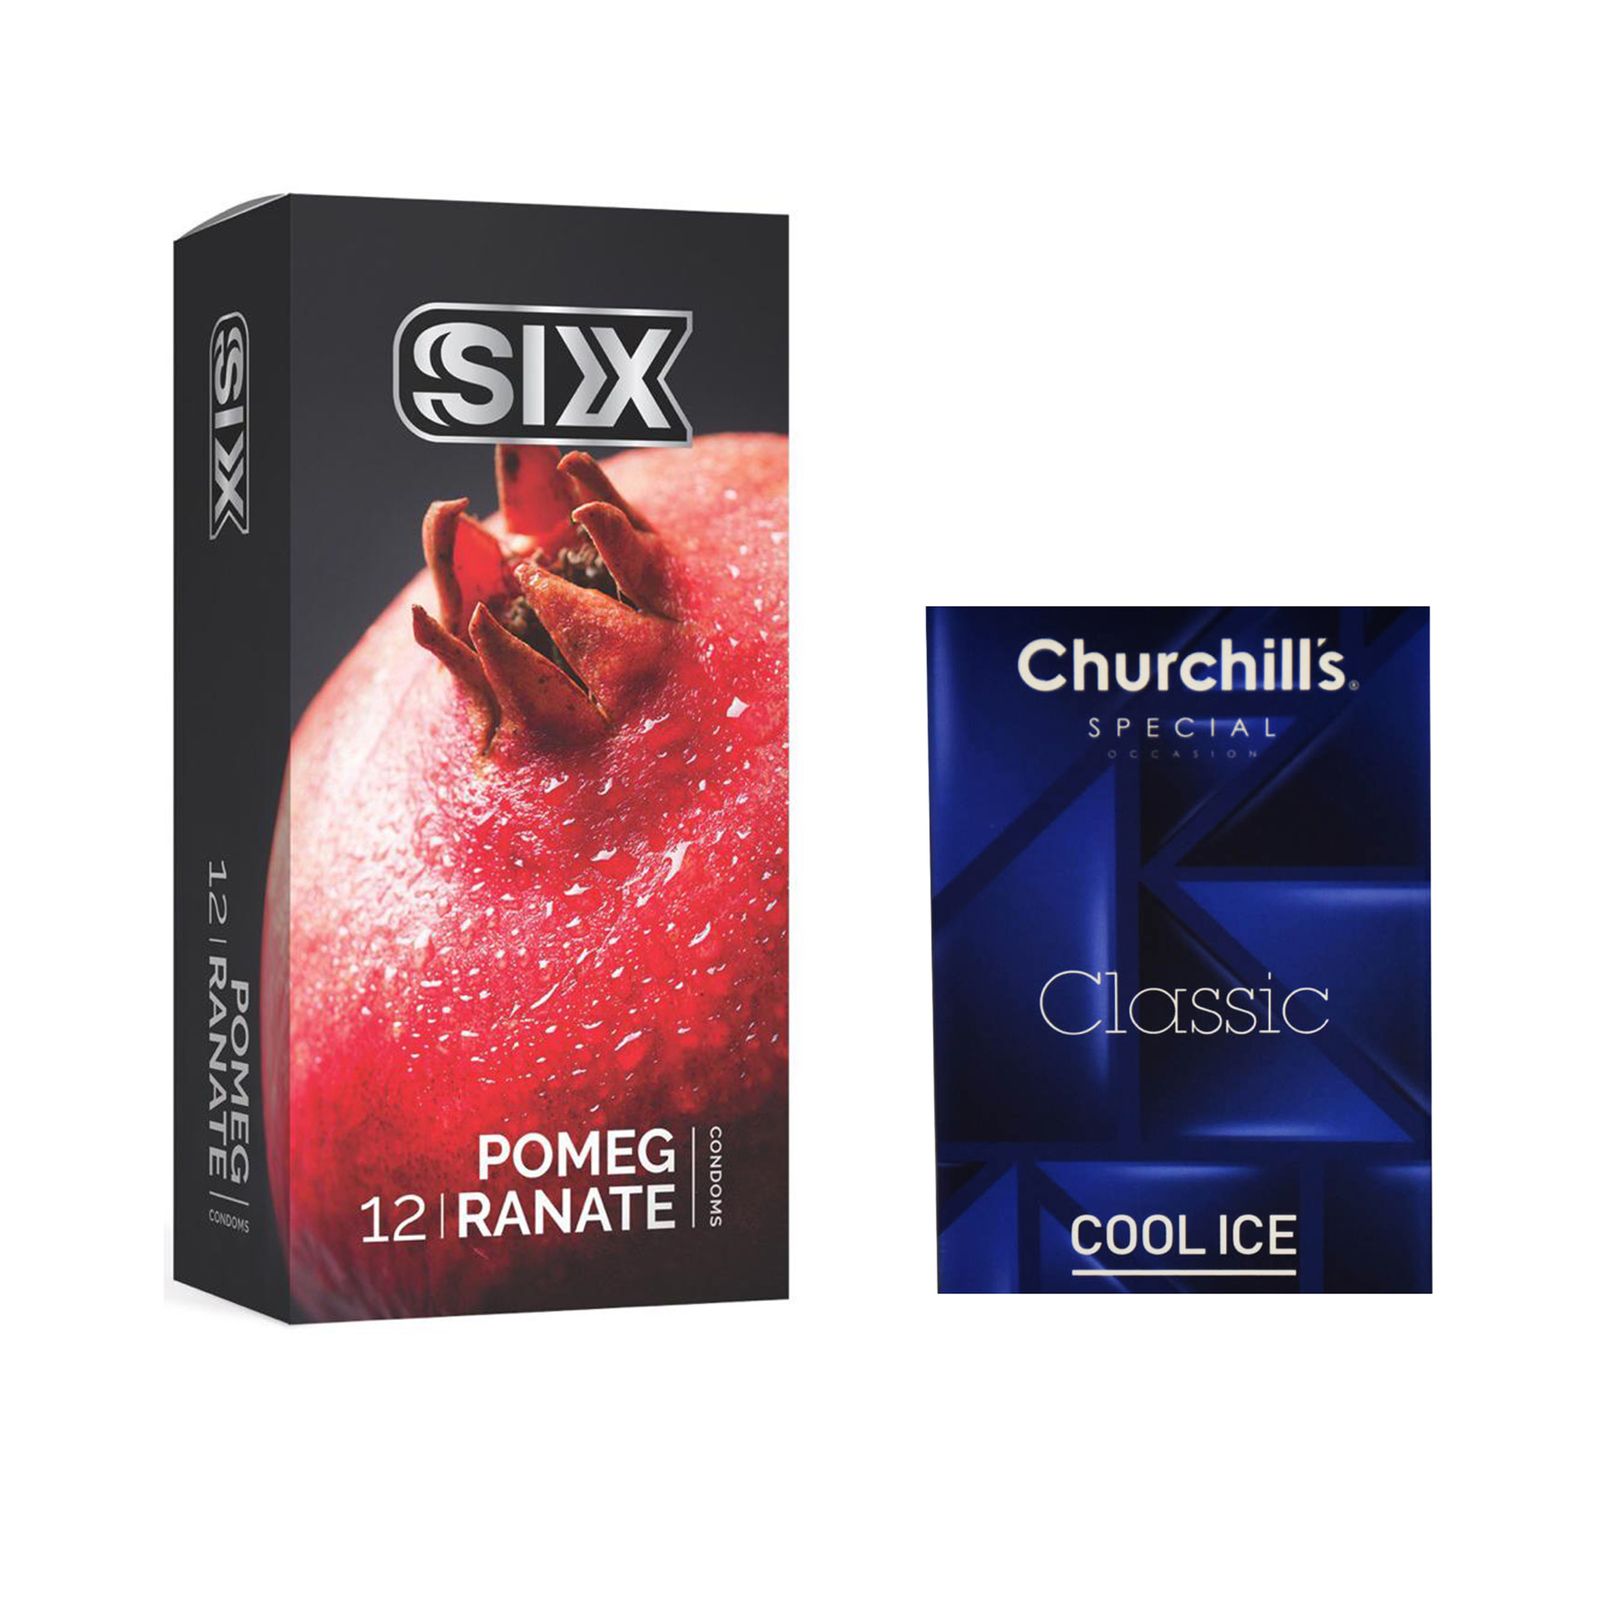 کاندوم سیکس مدل Pomegranate بسته 12 عددی به همراه کاندوم چرچیلز مدل Cool Ice بسته 3 عددی